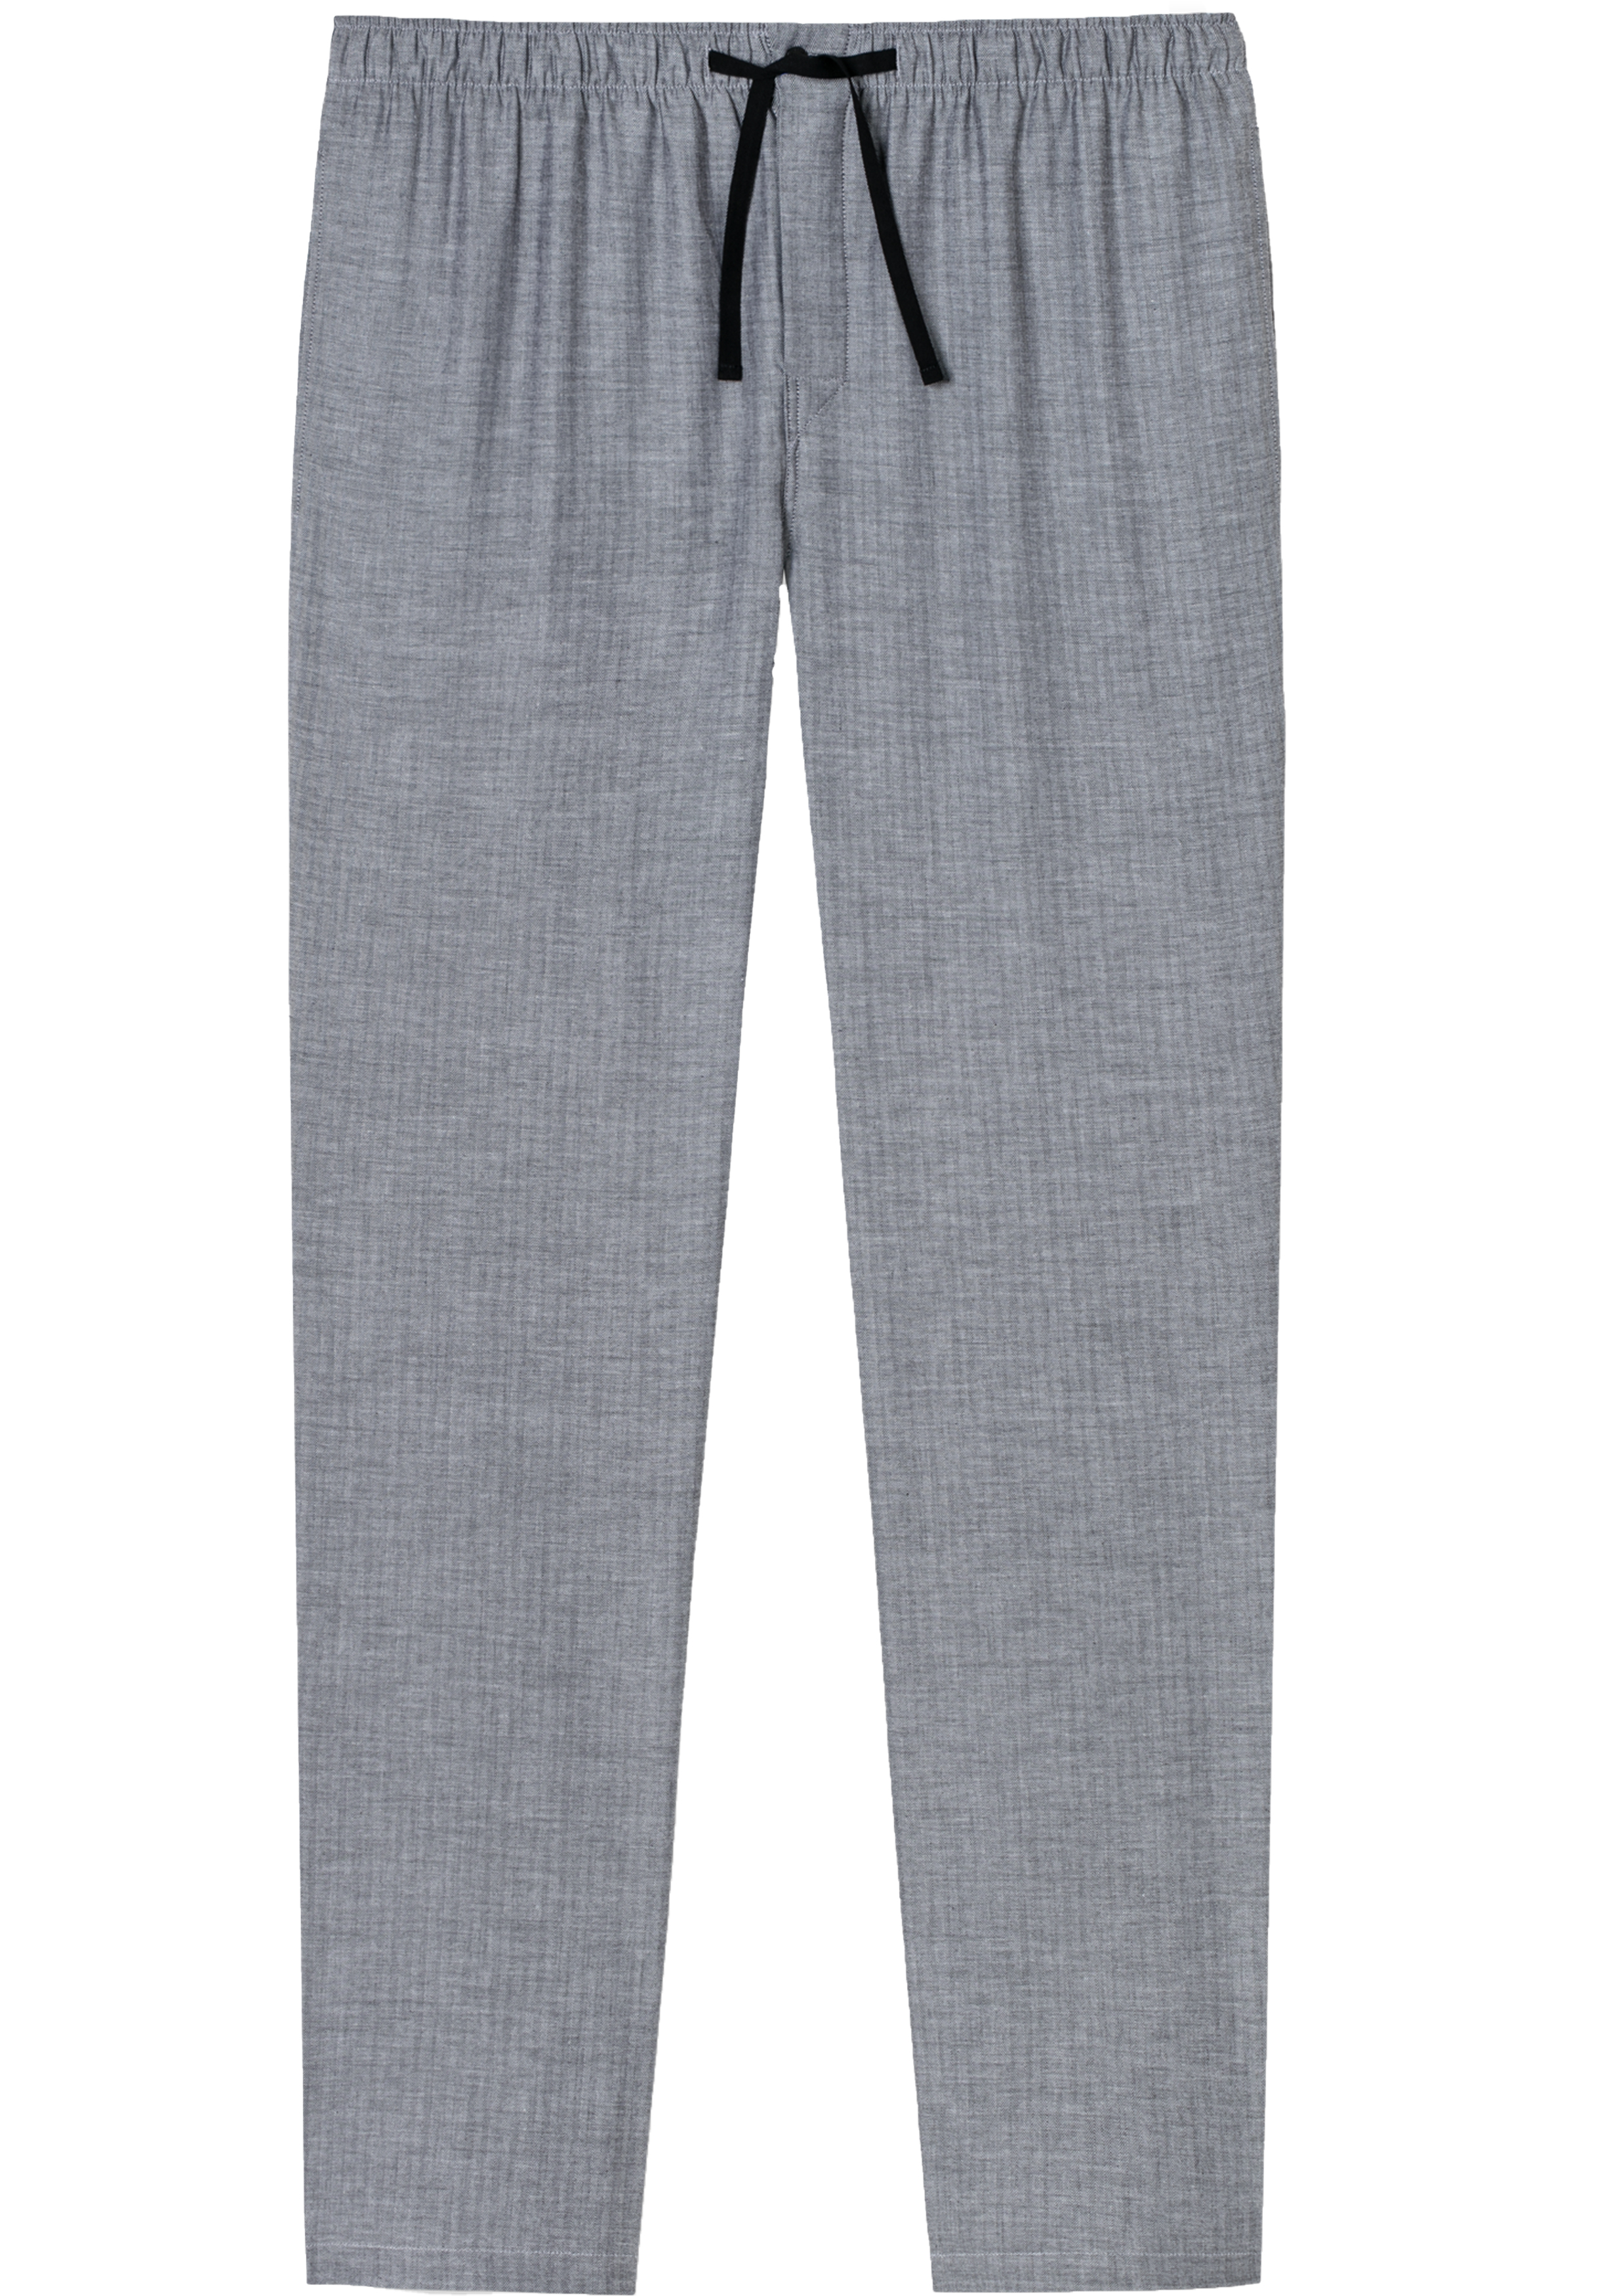 SCHIESSER Mix+Relax lounge broek, lange pijpen, dun niet elastisch, zwart met wit visgraat dessin